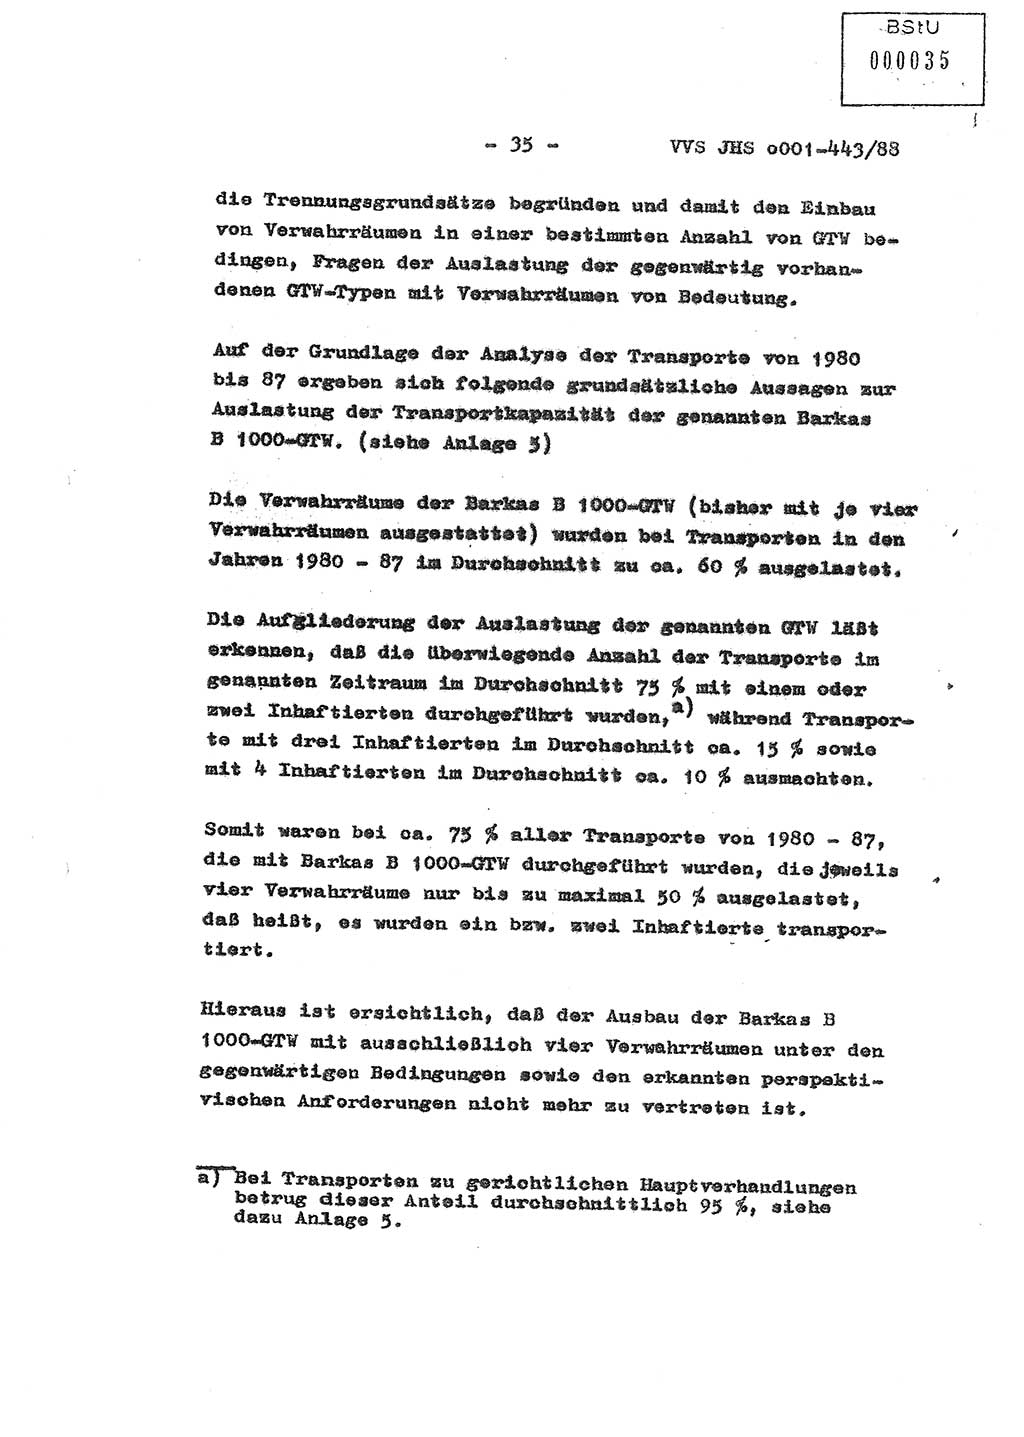 Diplomarbeit Hauptmann Michael Rast (Abt. ⅩⅣ), Major Bernd Rahaus (Abt. ⅩⅣ), Ministerium für Staatssicherheit (MfS) [Deutsche Demokratische Republik (DDR)], Juristische Hochschule (JHS), Vertrauliche Verschlußsache (VVS) o001-443/88, Potsdam 1988, Seite 35 (Dipl.-Arb. MfS DDR JHS VVS o001-443/88 1988, S. 35)